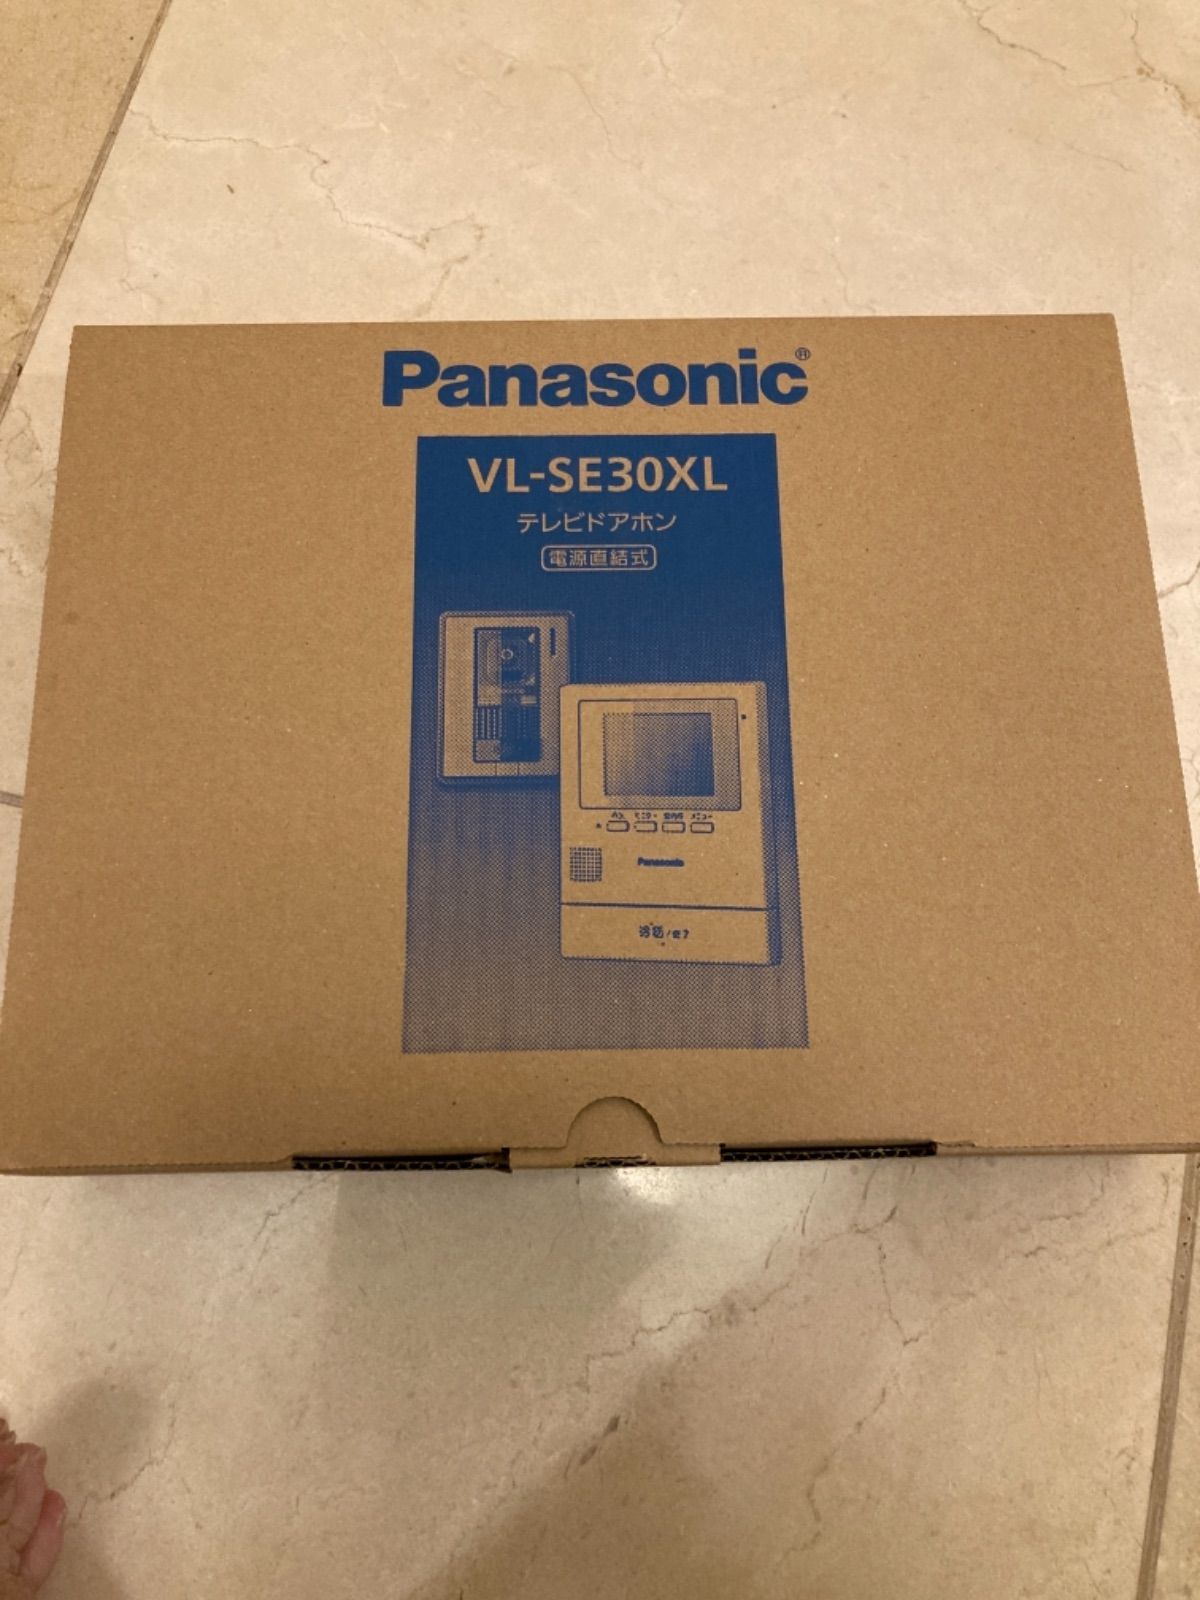 Panasonic VL-SE30XL テレビドアホン 電源直結式 - にこりショップ ...